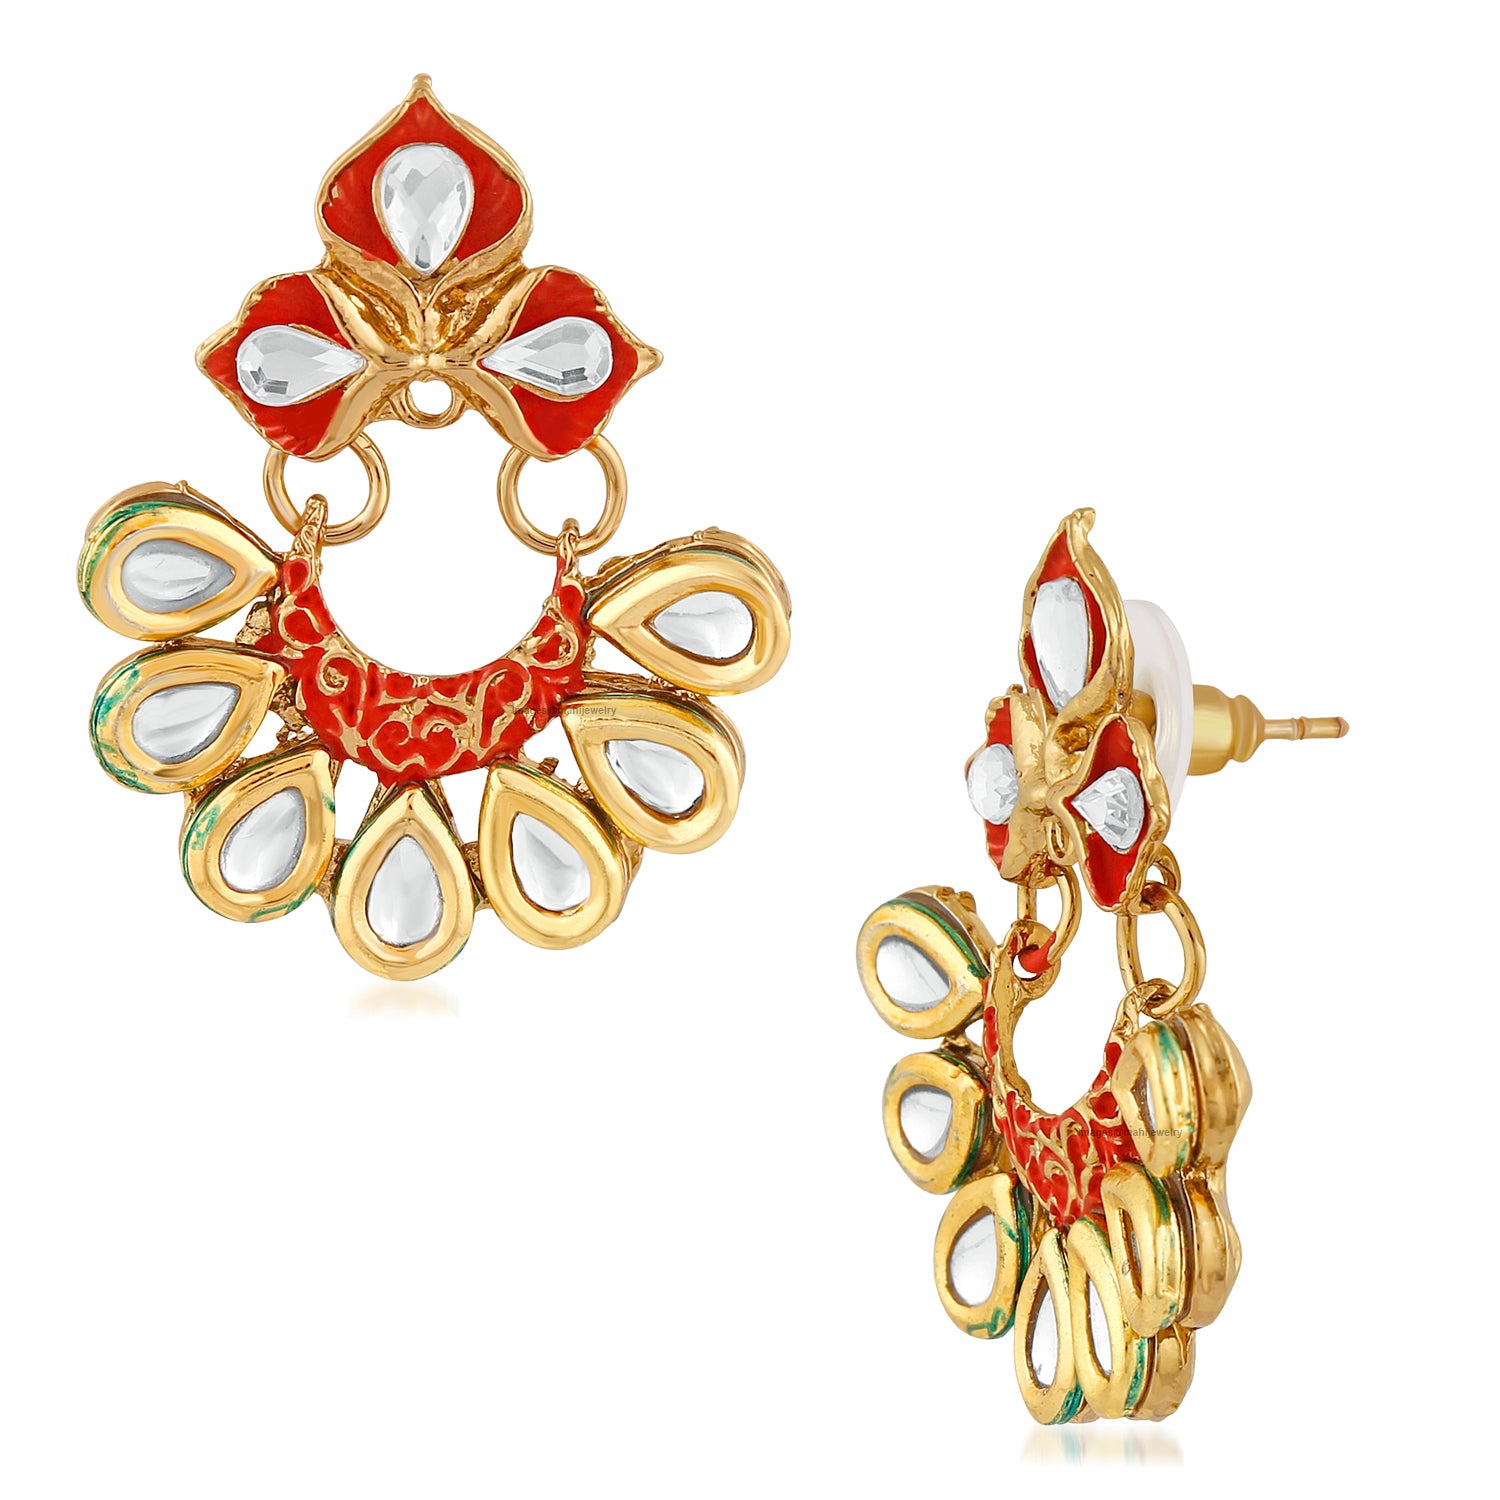 Traditional Floral Chandbali Meenakariwork Earrings